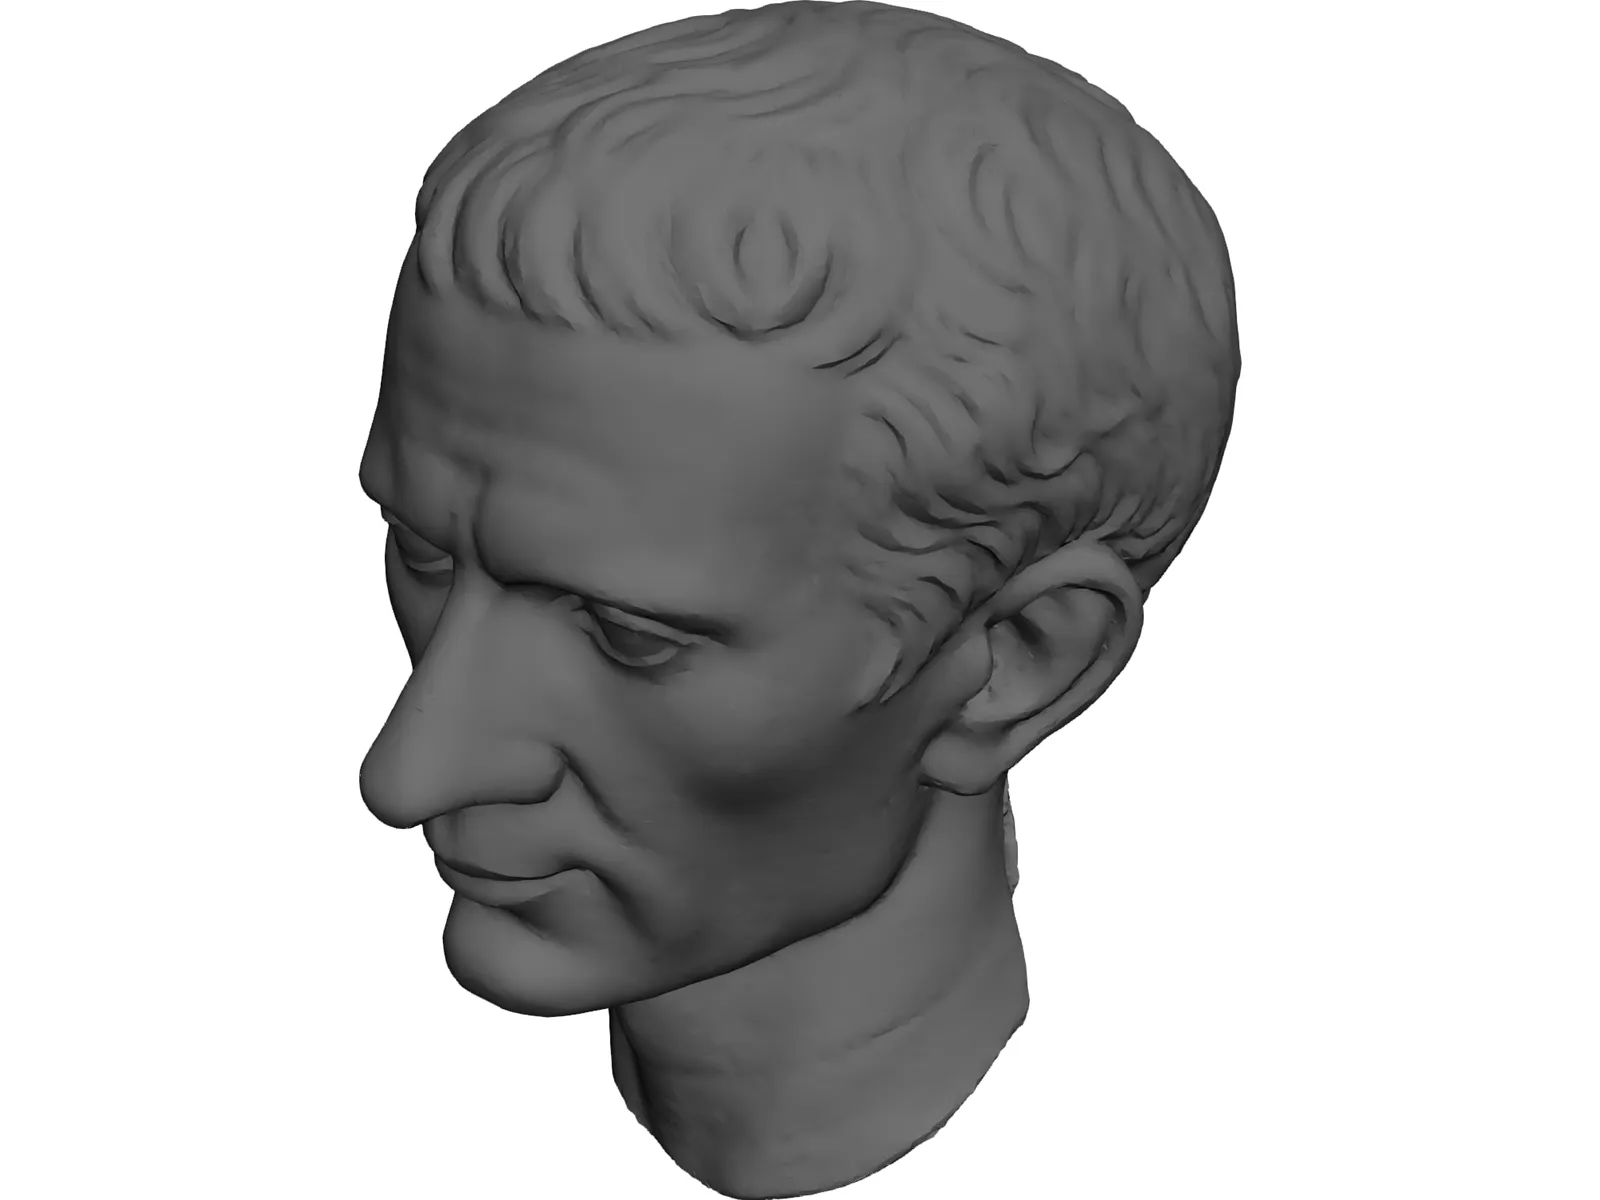 Julius Caesar 3D Model